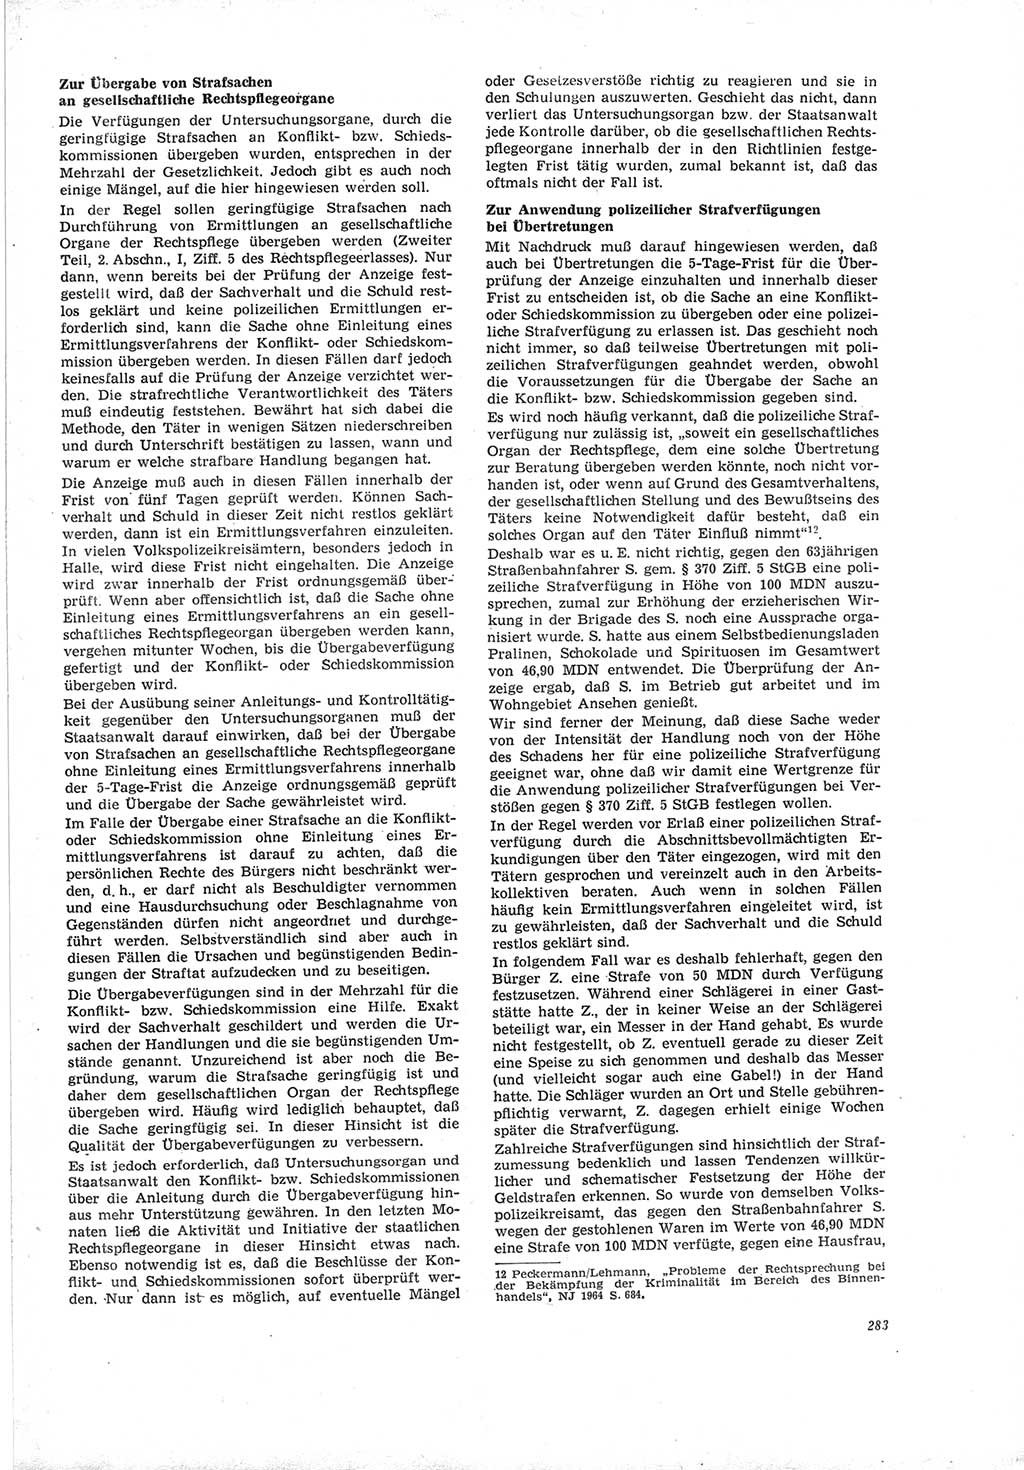 Neue Justiz (NJ), Zeitschrift für Recht und Rechtswissenschaft [Deutsche Demokratische Republik (DDR)], 19. Jahrgang 1965, Seite 283 (NJ DDR 1965, S. 283)